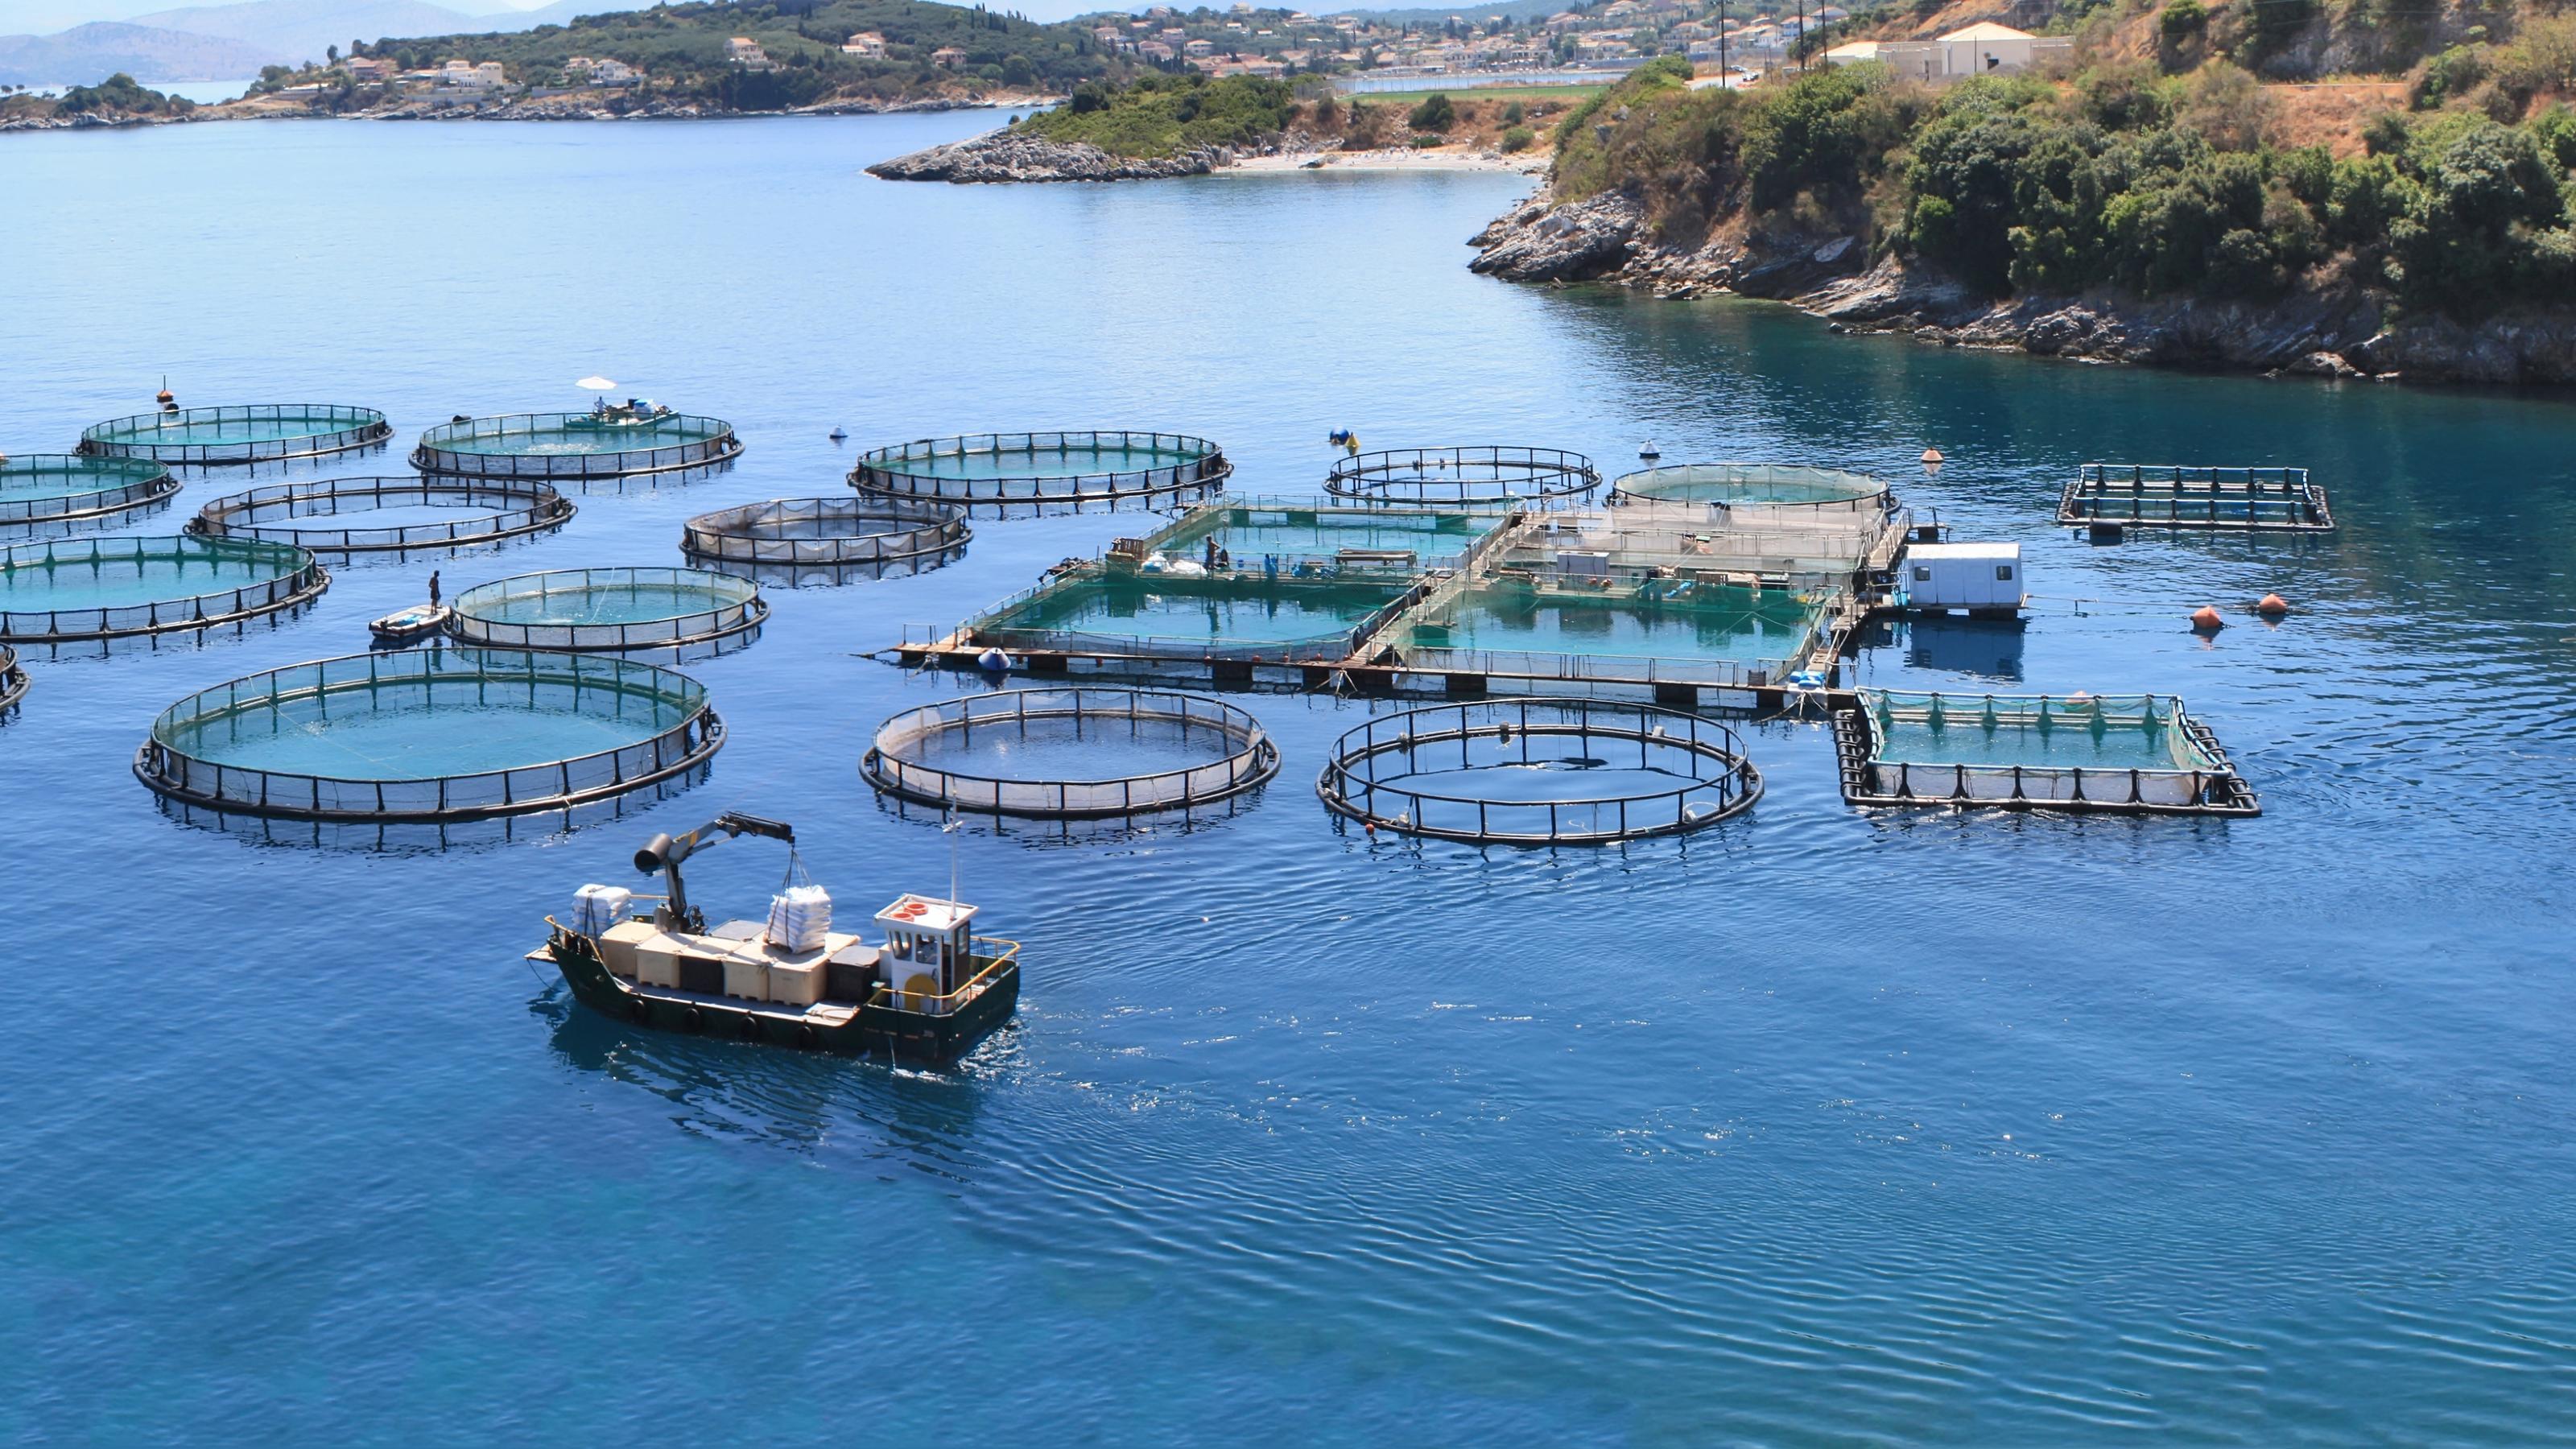 Große Fischfarmen und Aquakulturen wie diese auf dem Foto schützen zwar die wildlebenden Bestände, aber sie sorgen auch für Umweltprobleme.